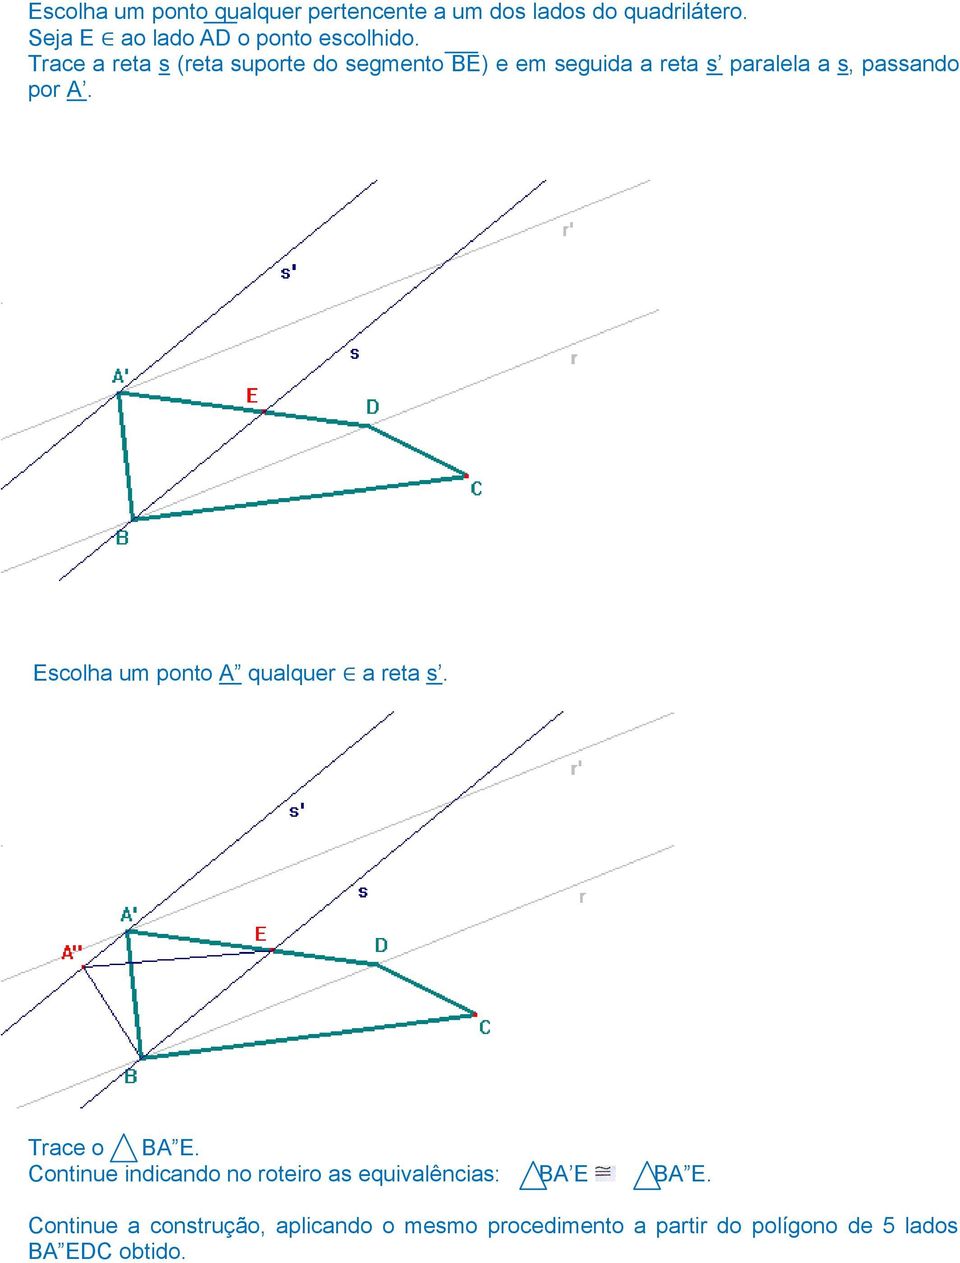 Trace a reta s (reta suporte do segmento BE) e em seguida a reta s paralela a s, passando por A.